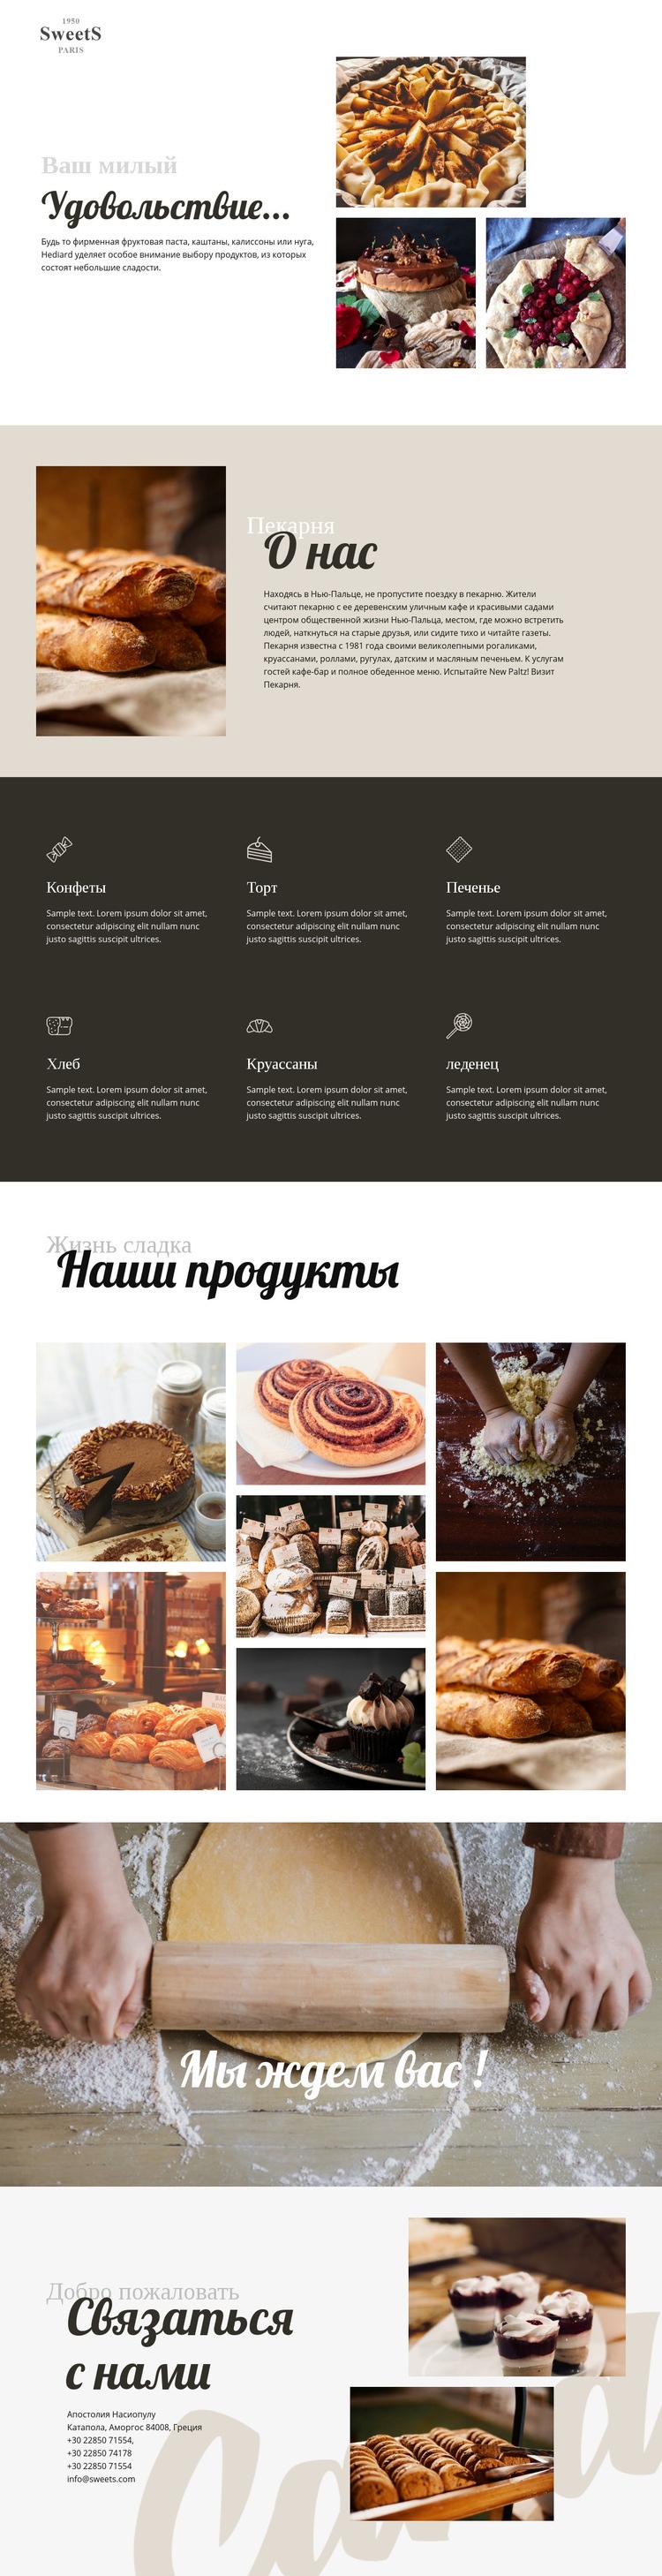 Торты и выпечка WordPress тема